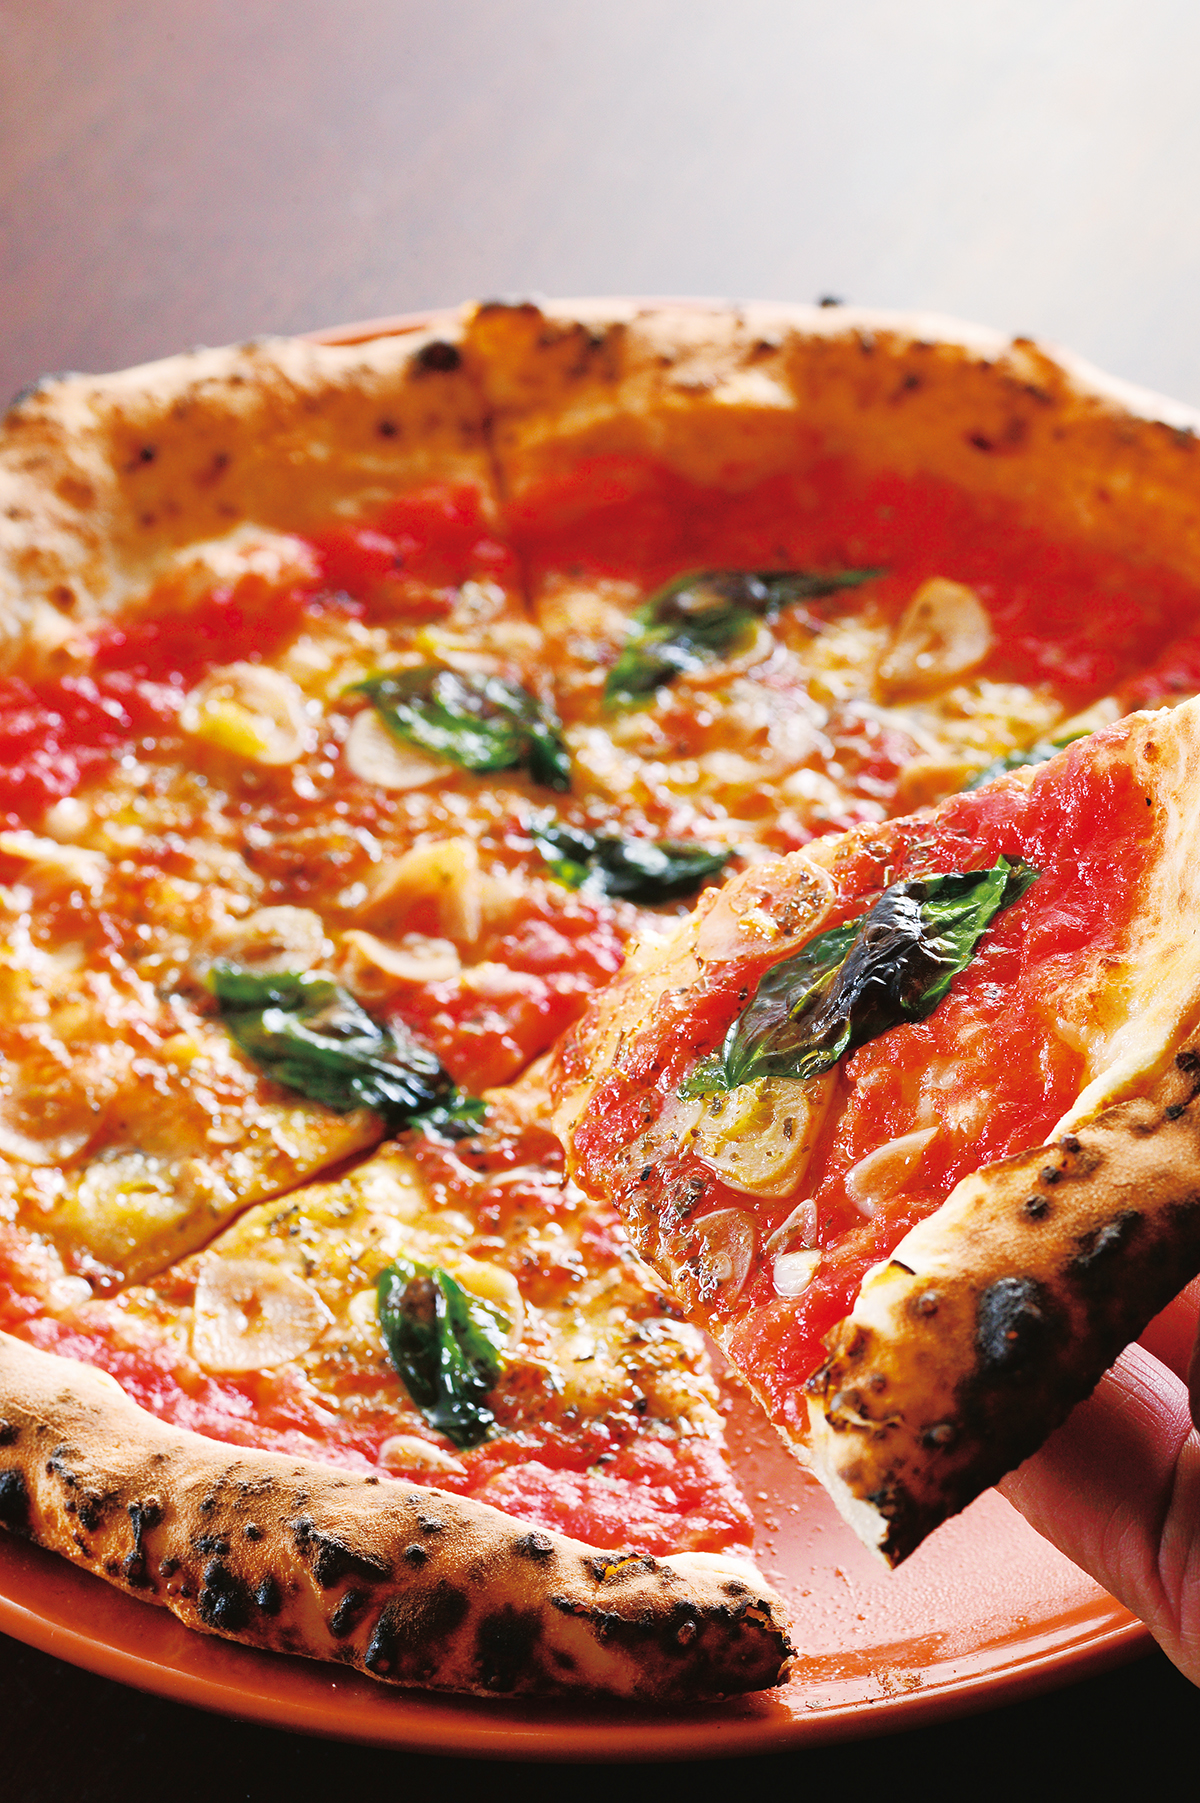 『ピッツェリア　ソル』<br />
マリナーラ1000円<br />
トマトソースにニンニク、オレガノの香りが食欲を誘う。「シンプルイズベスト」とはこのピッツァのためにある言葉！